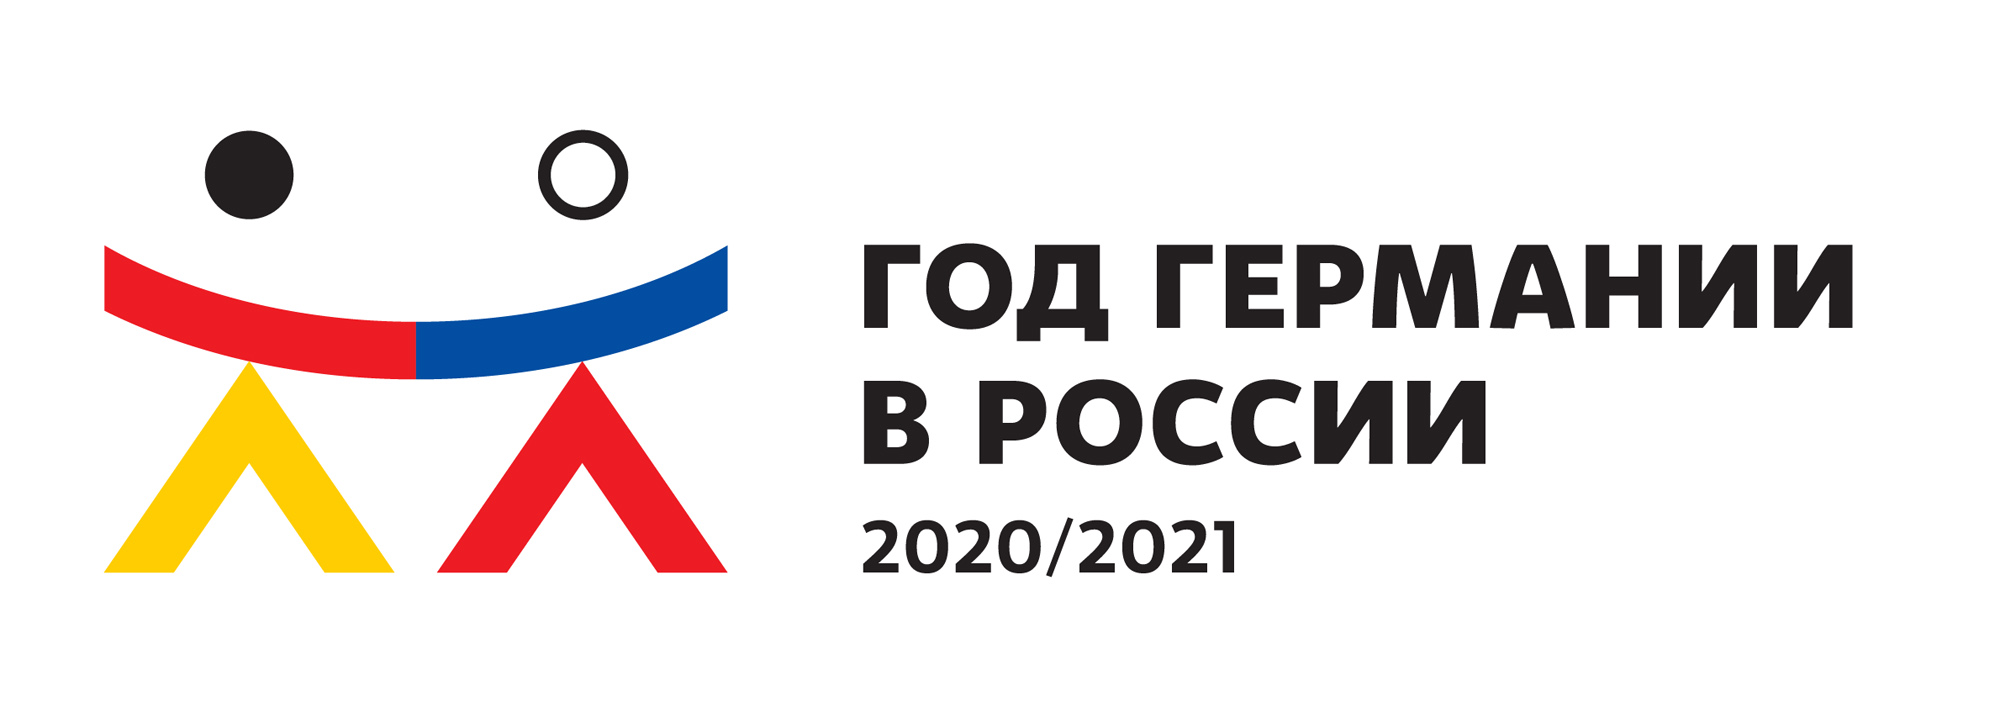 Год Германии в России 2020/2021